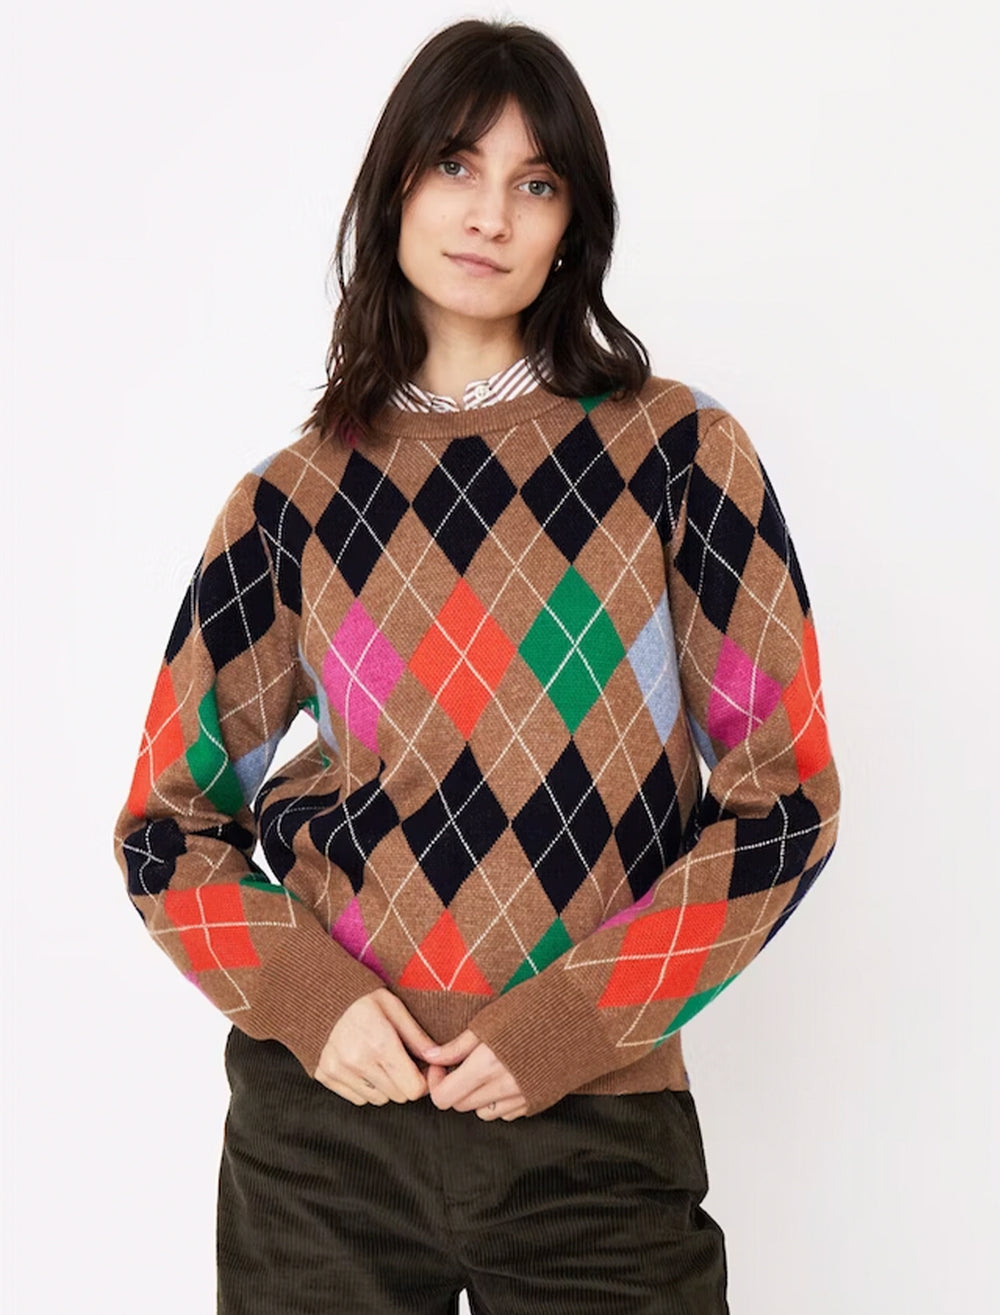 Model wearing KULE's the heidi sweater.